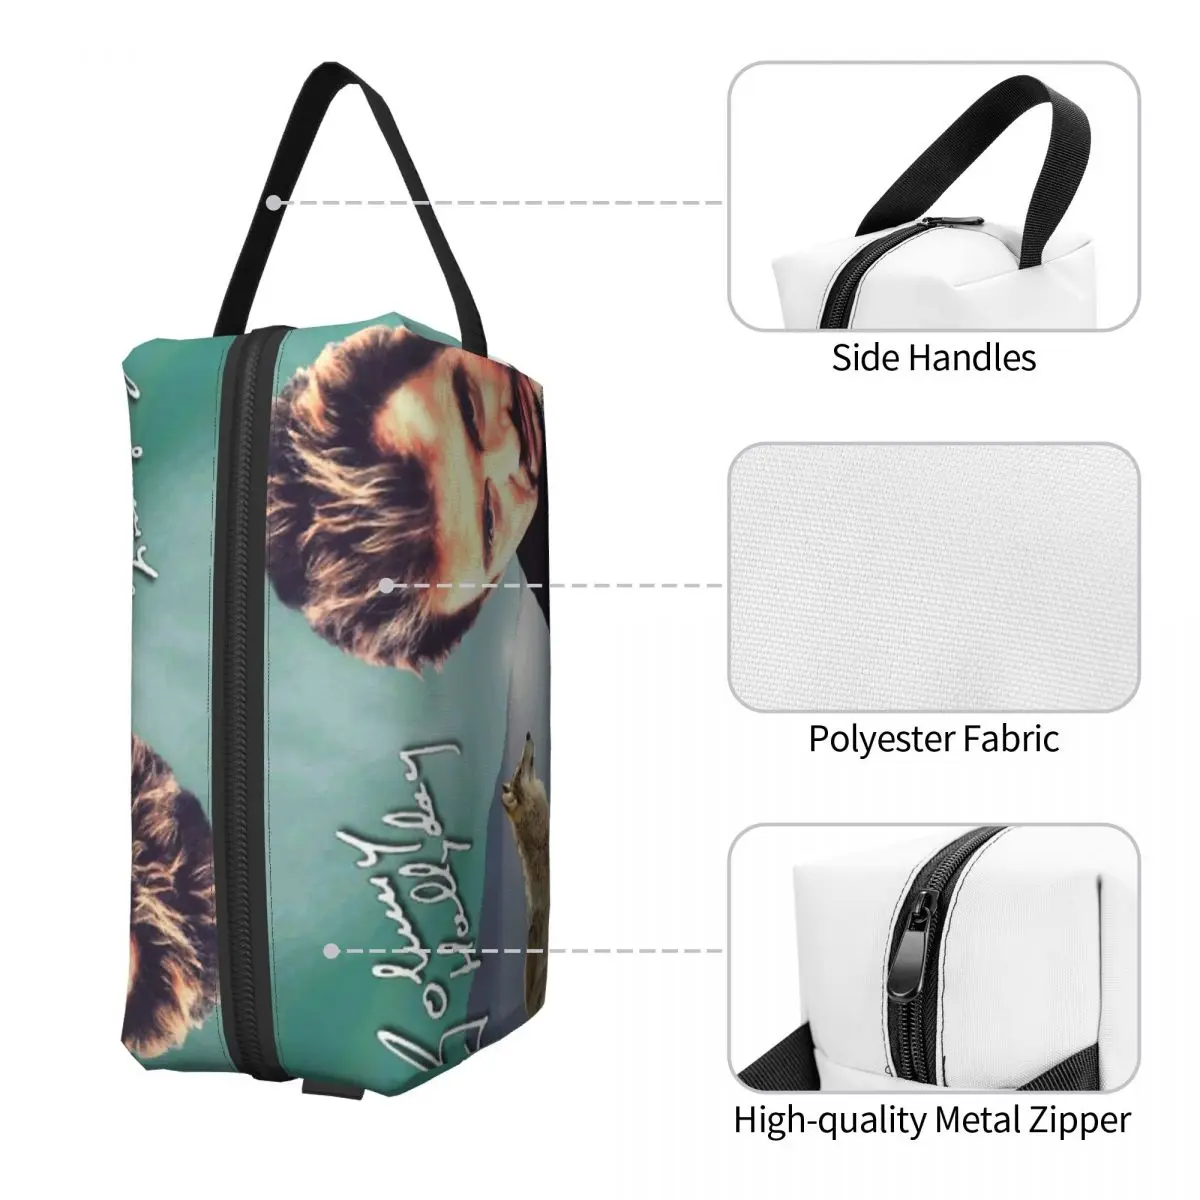 Косметичка Johnny Hallyday для женщин, косметический органайзер для путешествий, Модные сумки для хранения туалетных принадлежностей французской рок-певицы 2